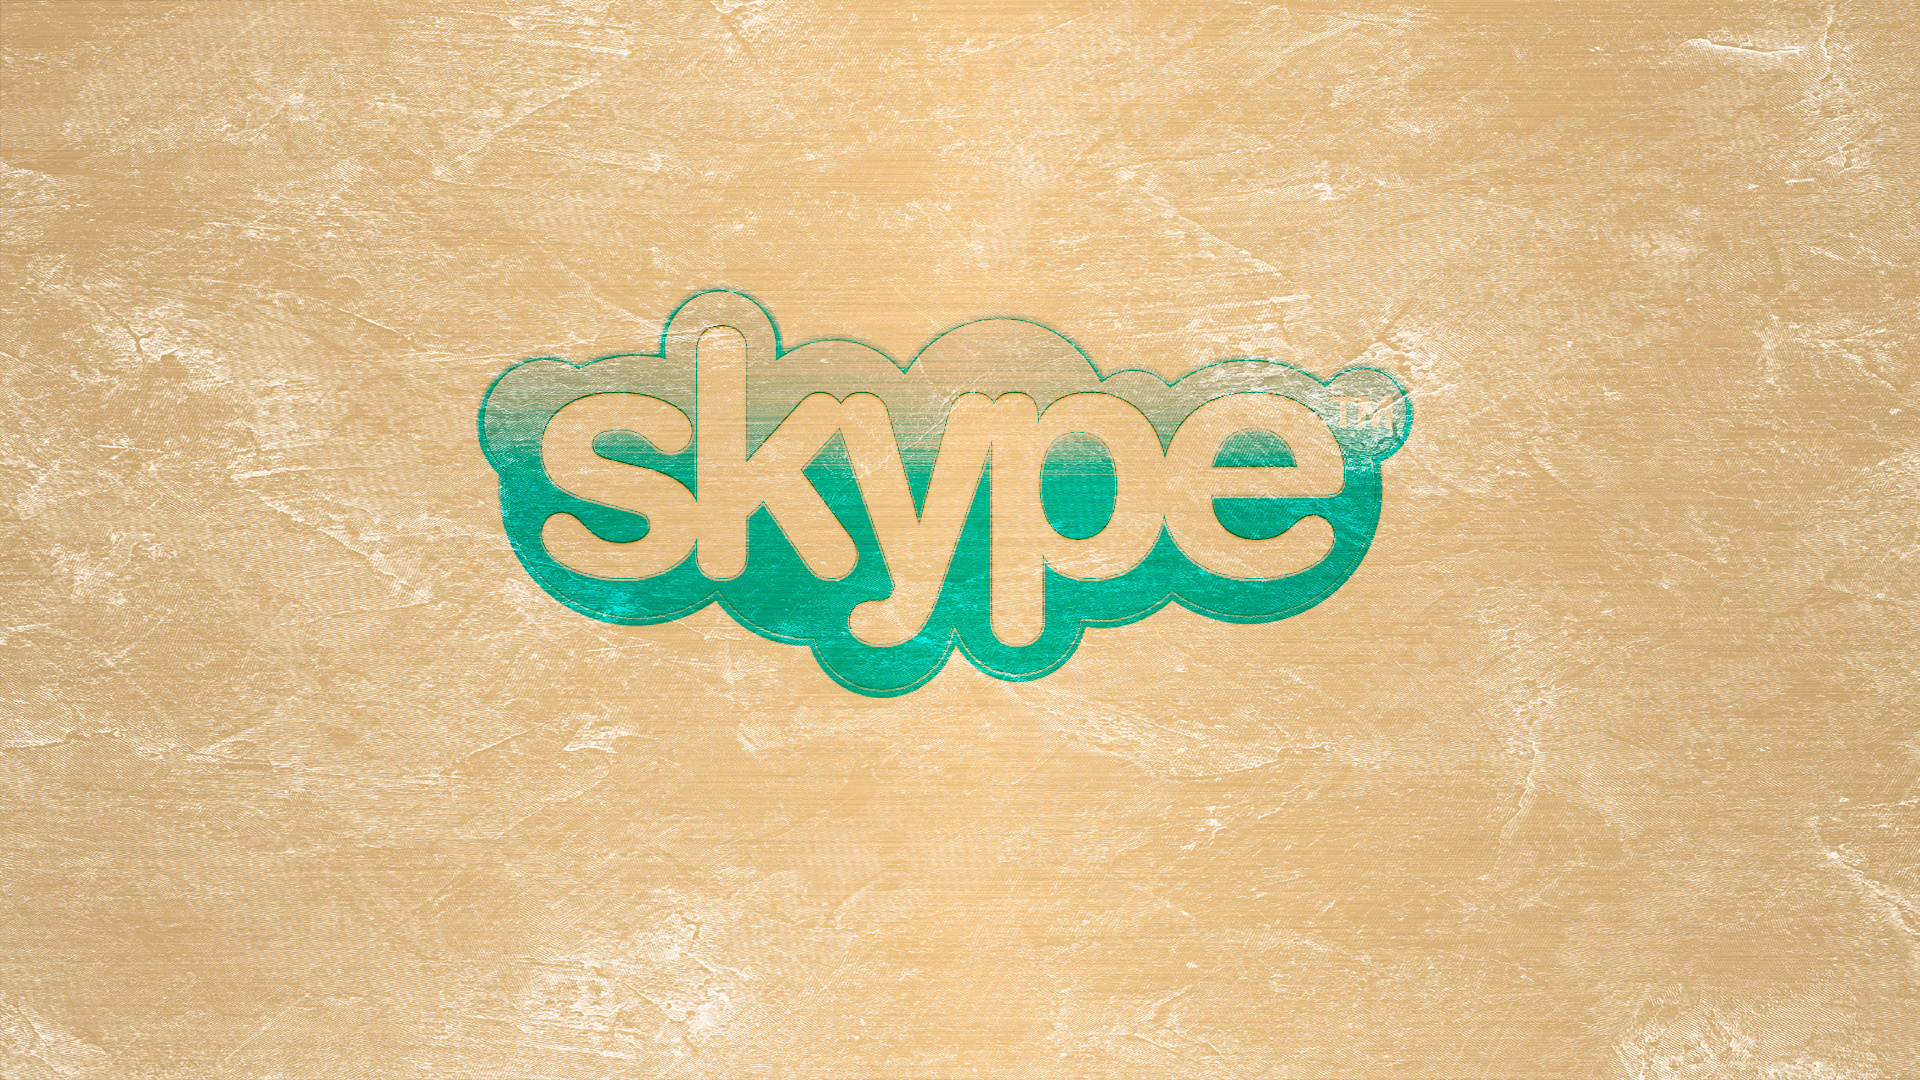 Télécharger des fonds d'écran Skype HD